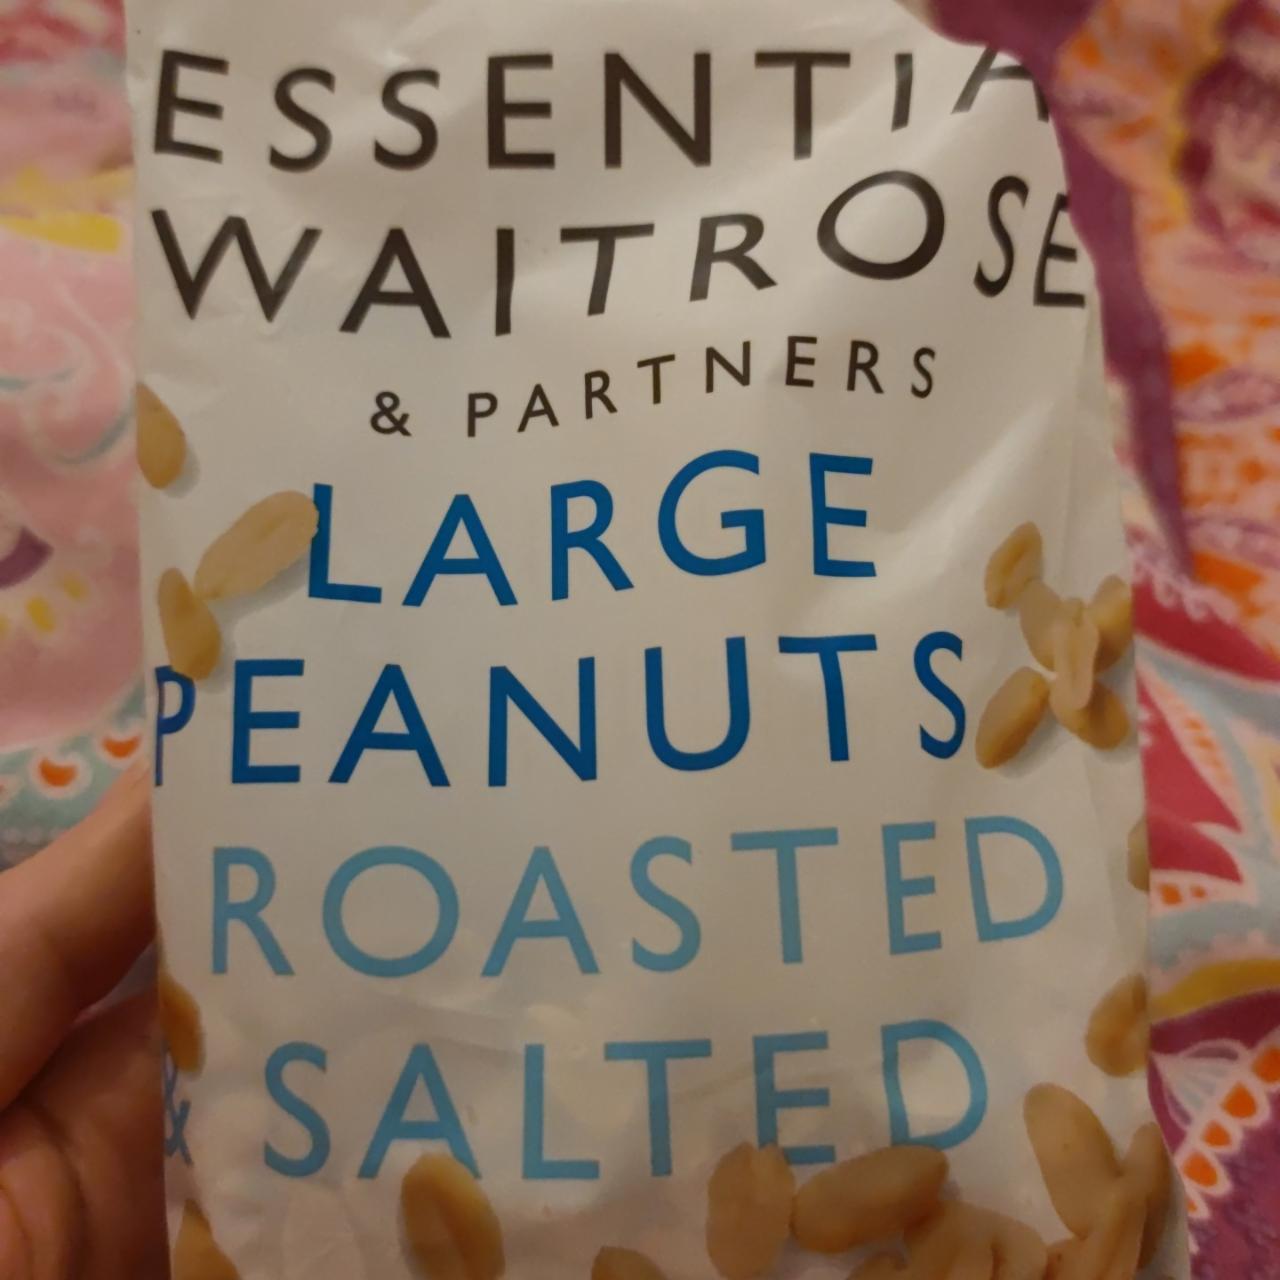 Fotografie - Large peanuts roasted salted Essential Waitrose